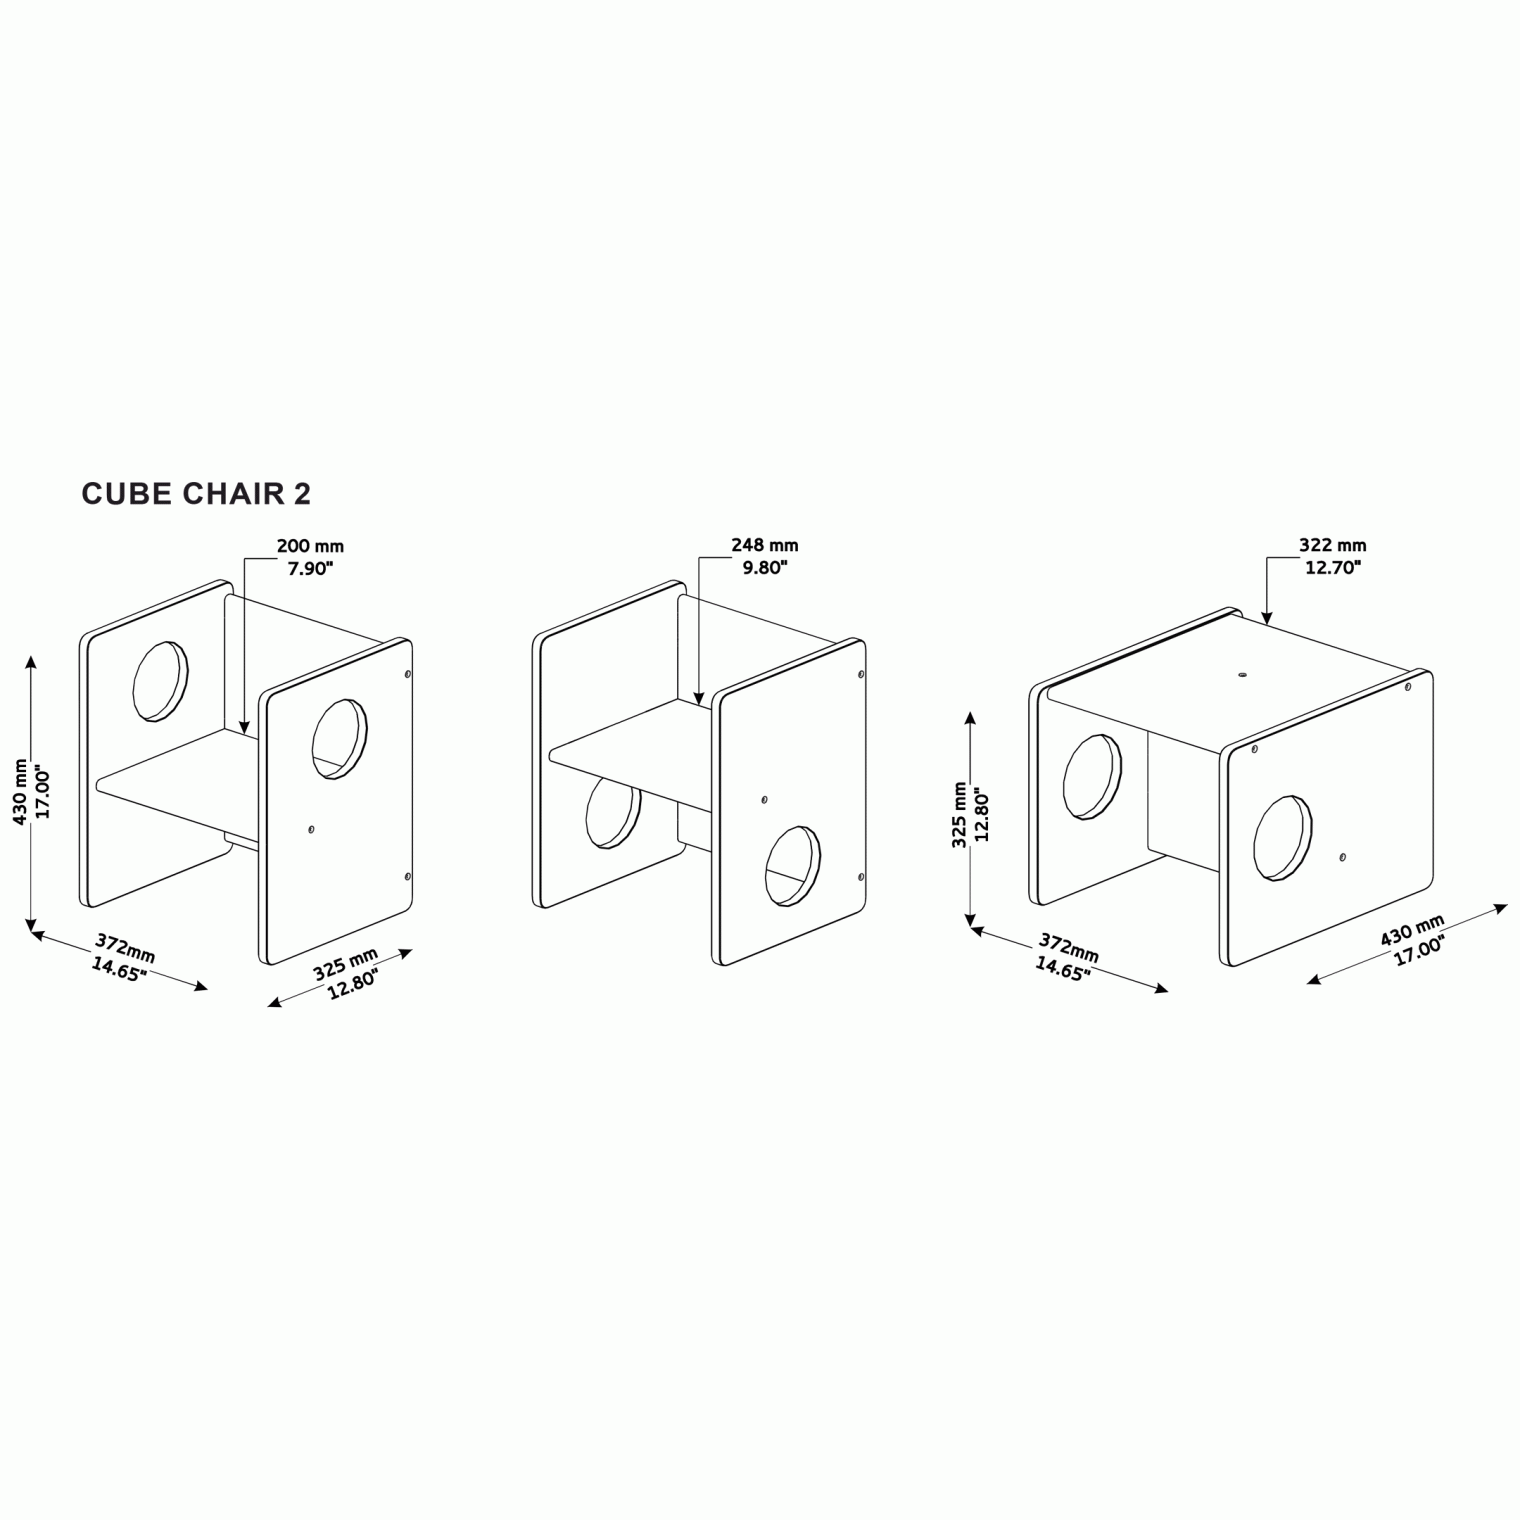 Montessori chair Cube2 dimensions